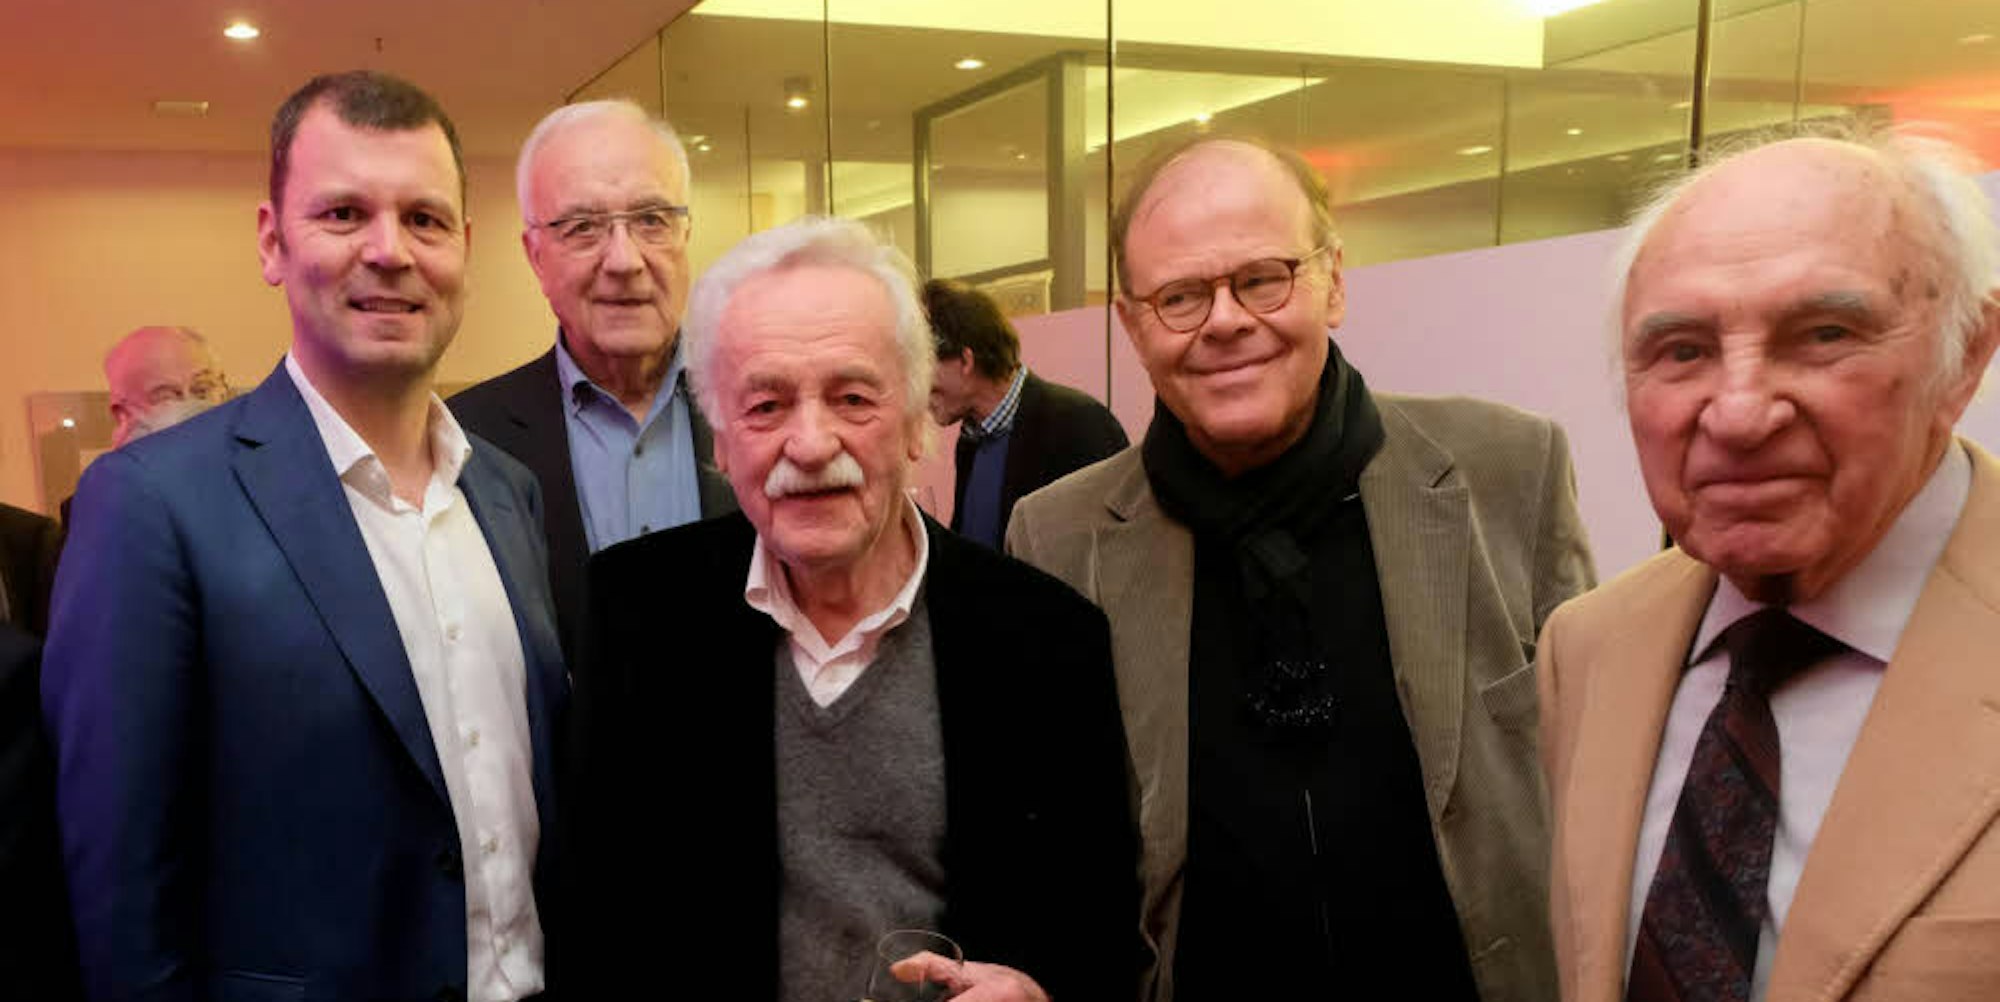 Chefredakteur Carsten Fiedler, der ehemalige WDR-Intendant Fritz Pleitgen, Walter Hanel und die ehemaligen Chefredakteure Peter Pauls und Hans Schmitz (v.l.)